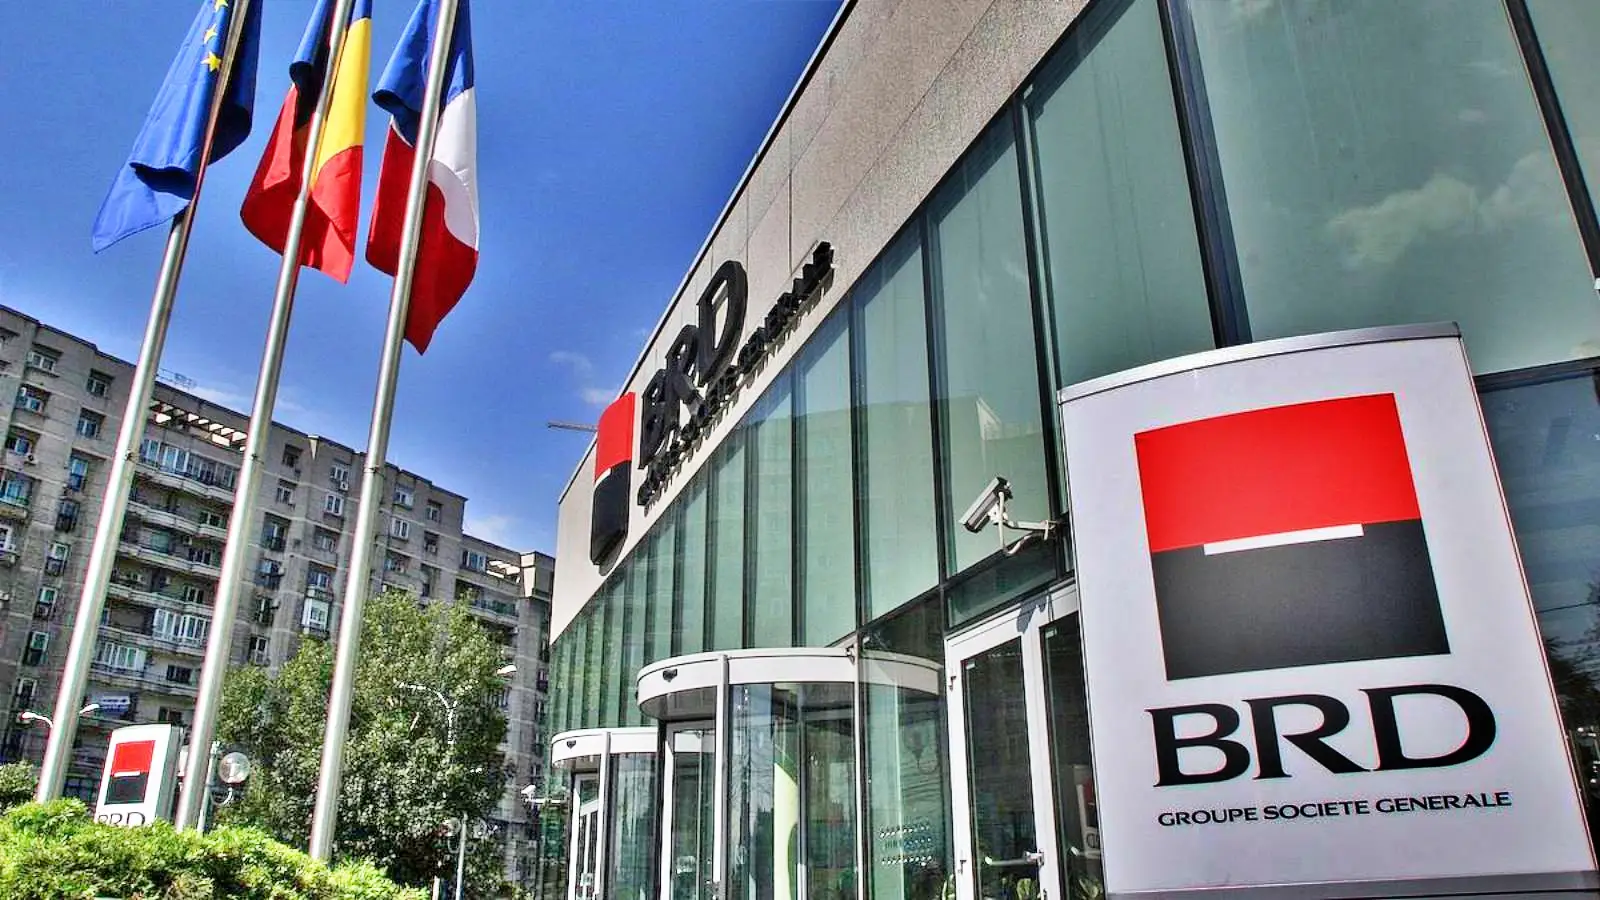 BRD Roumanie IMPORTANT Décision officielle confirmée que les clients doivent connaître